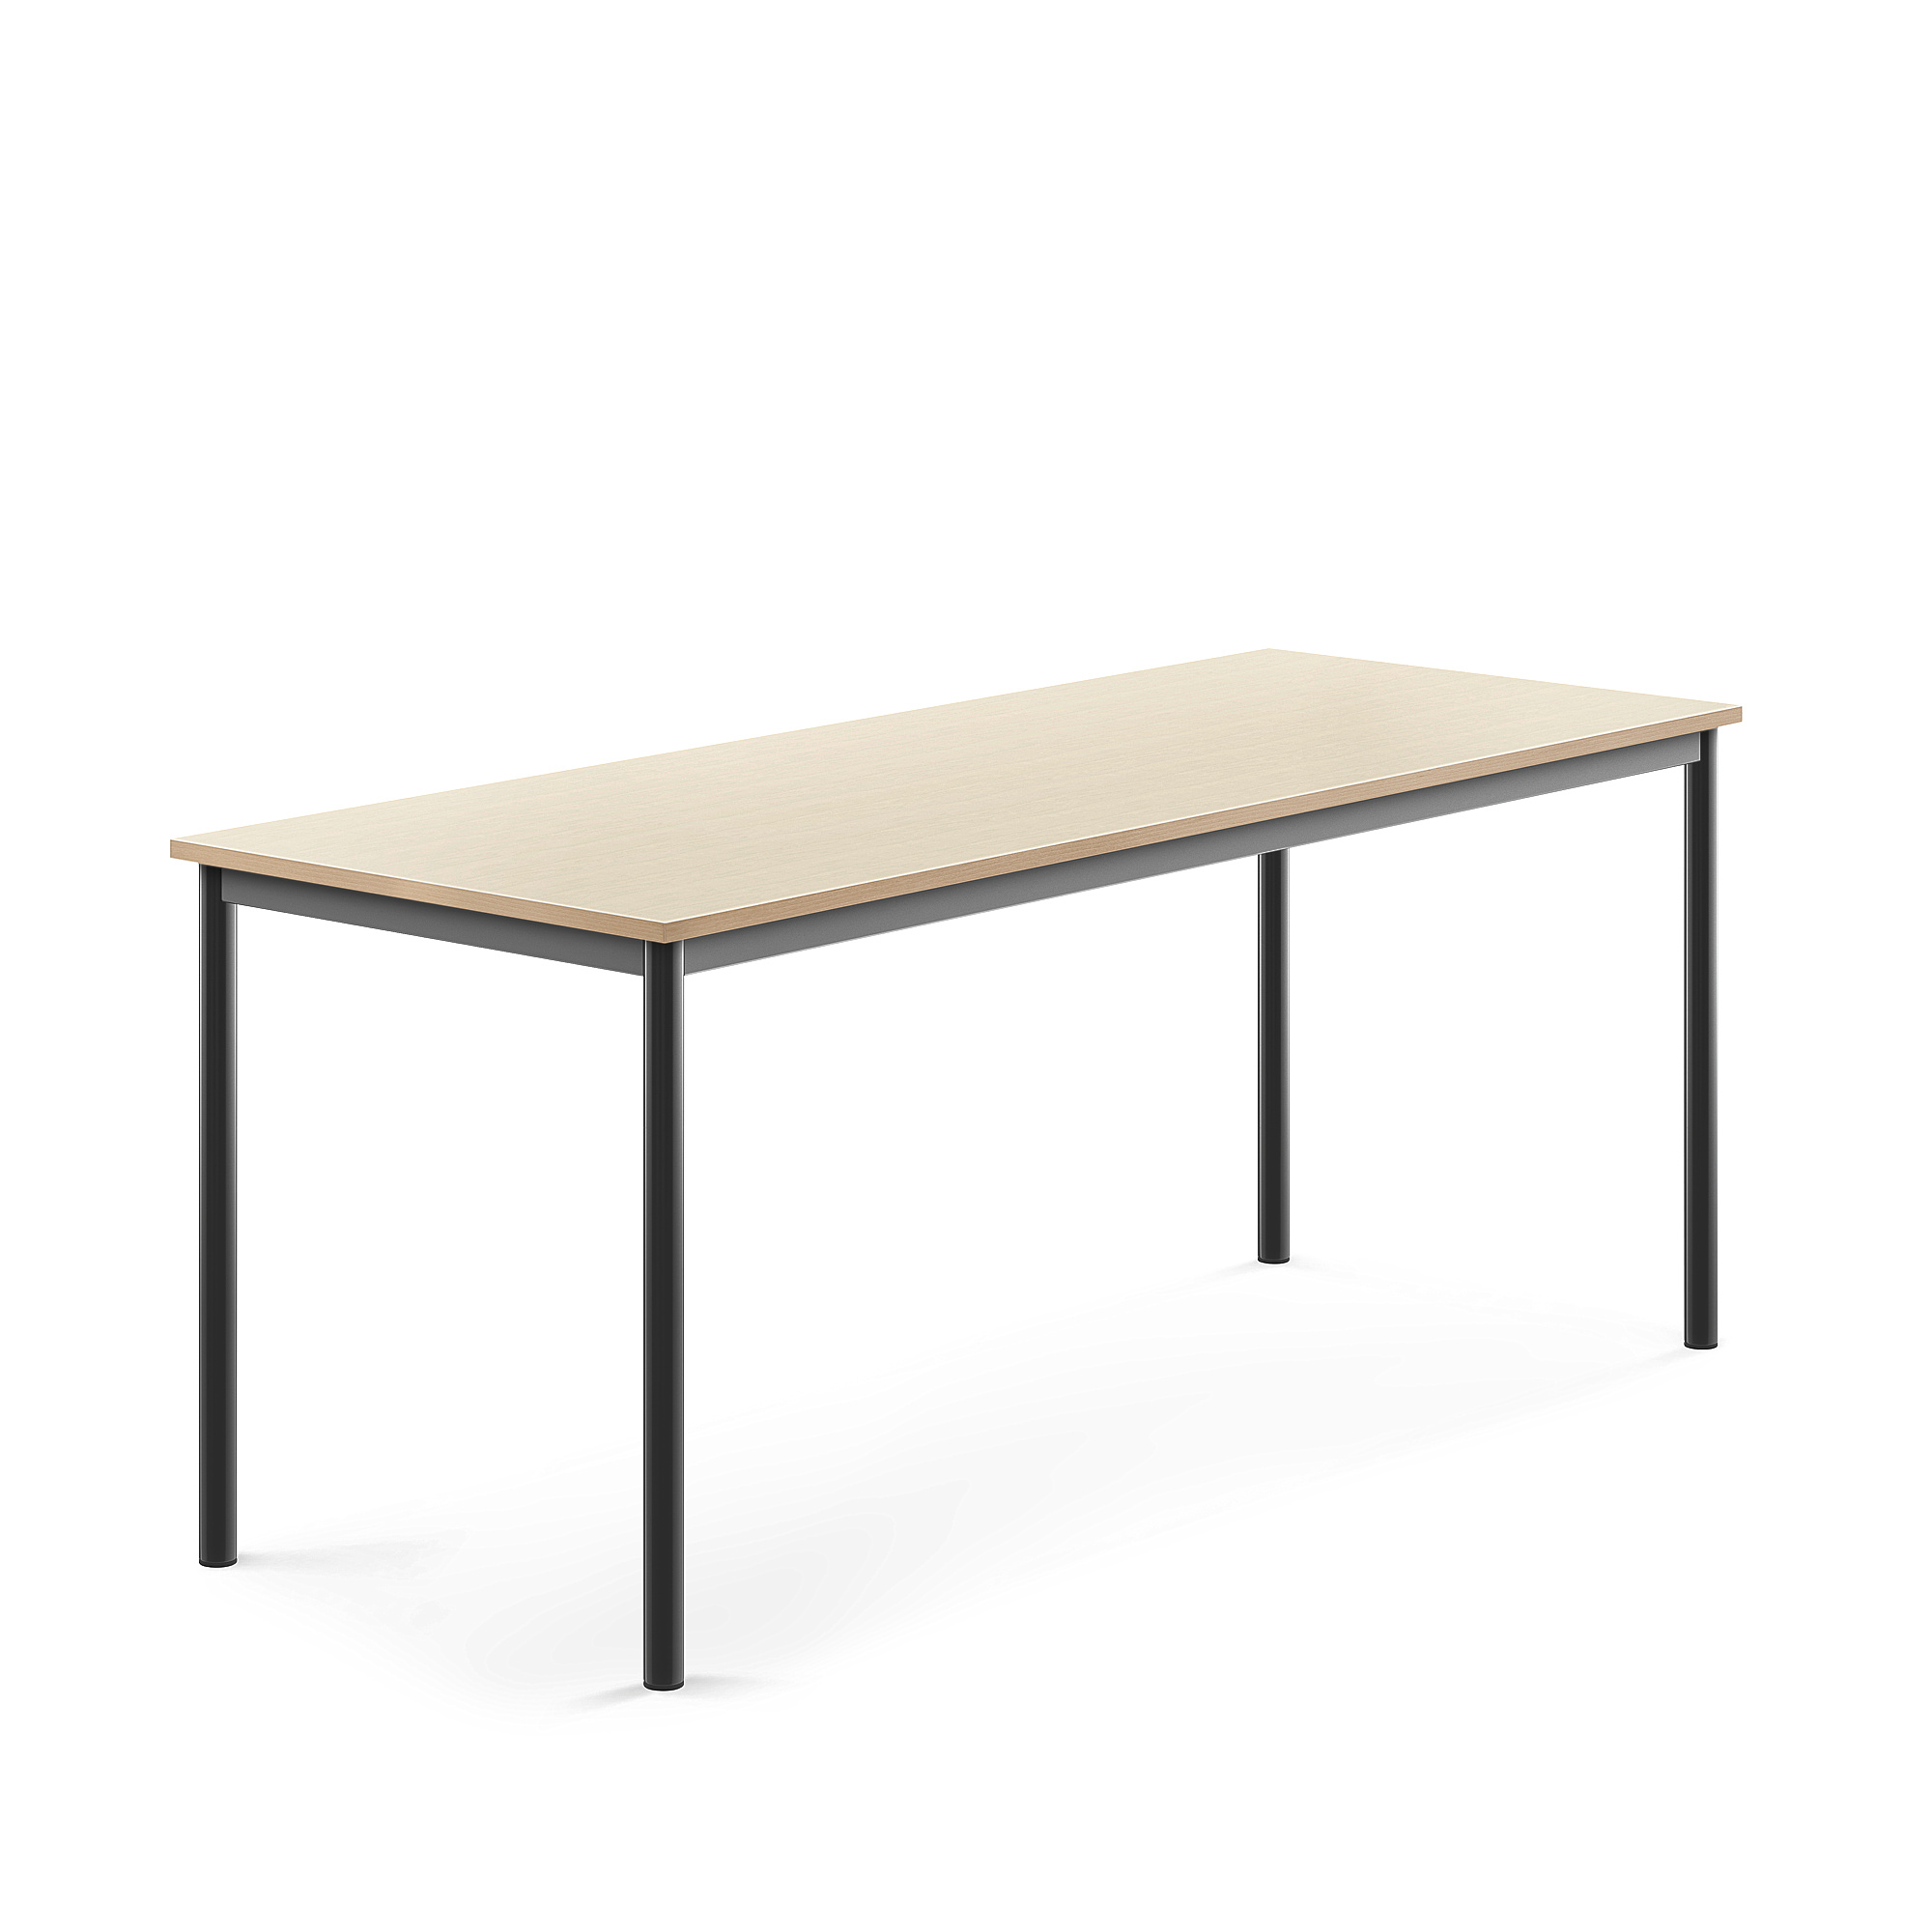 Stůl SONITUS, 1800x700x720 mm, antracitově šedé nohy, HPL deska tlumící hluk, bříza